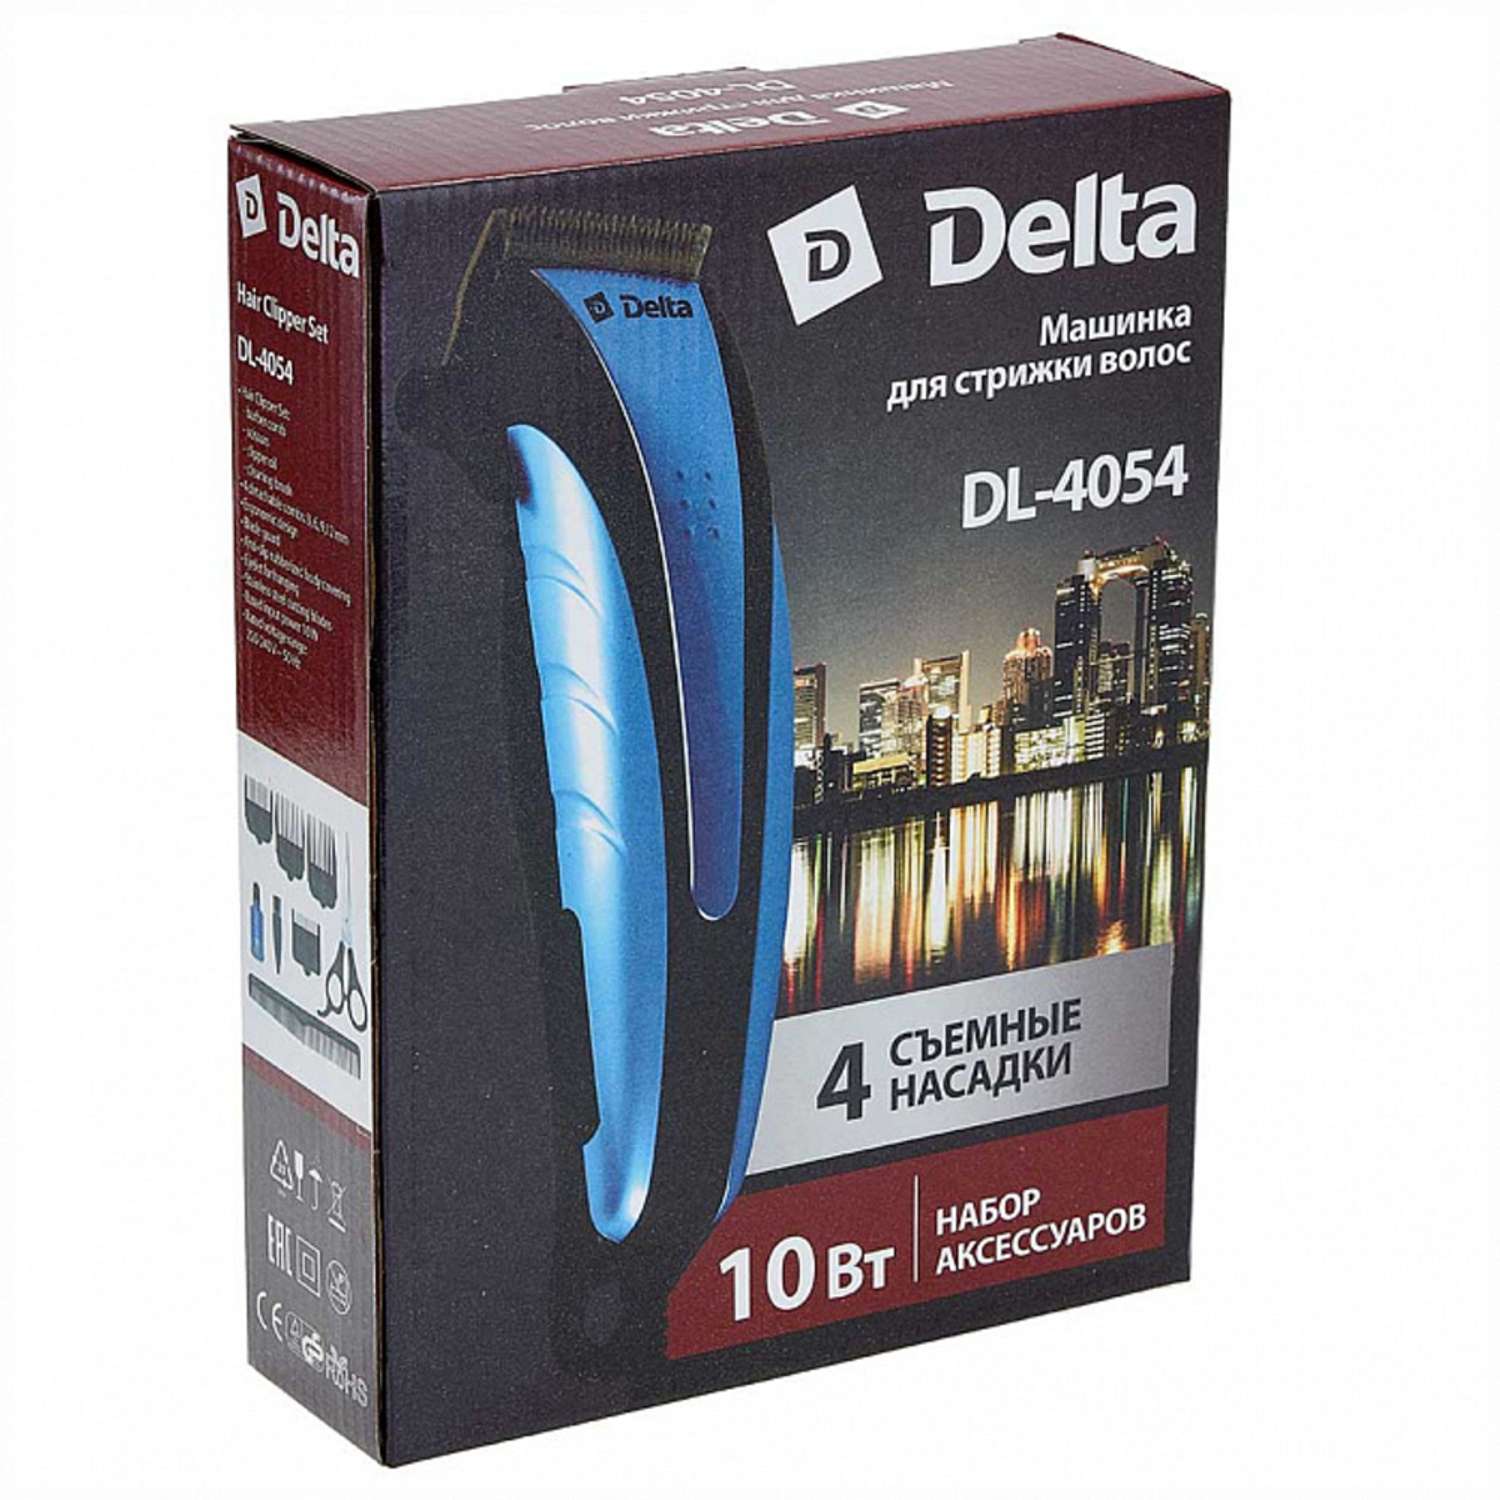 Машинка для стрижки волос Delta DL-4054 шампанское 10Вт 4 съемных гребня - фото 3